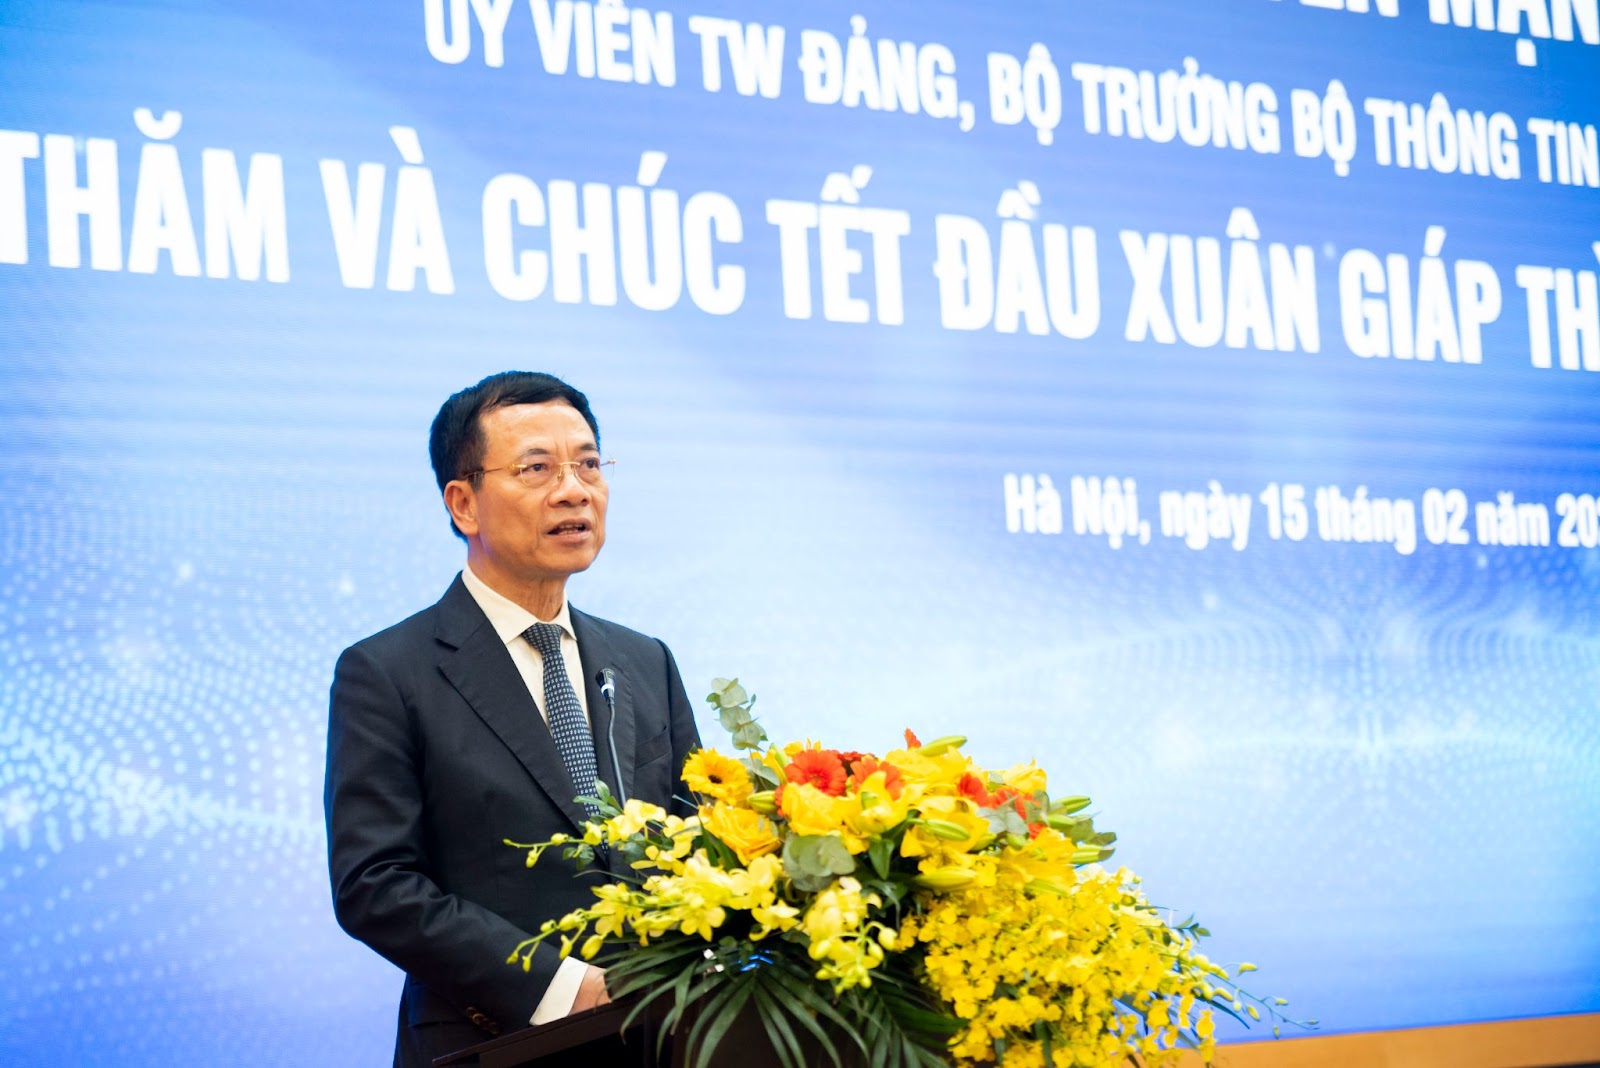 Bộ trưởng Nguyễn Mạnh Hùng: FPT cần có quyết tâm lớn hơn với công nghiệp bán dẫn